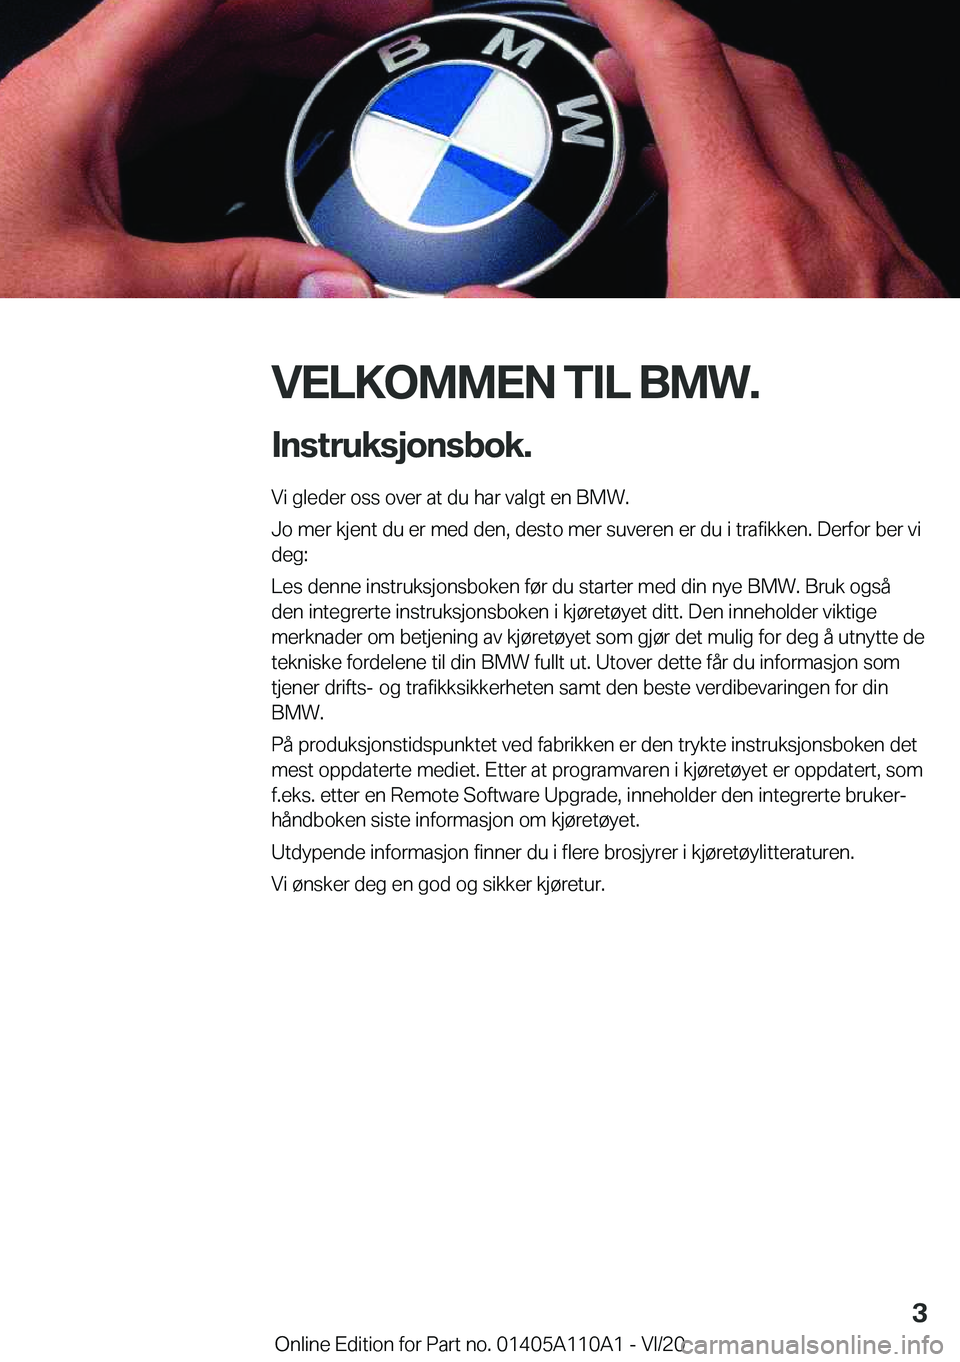 BMW 7 SERIES 2021  InstruksjonsbØker (in Norwegian) �V�E�L�K�O�M�M�E�N��T�I�L��B�M�W�.�I�n�s�t�r�u�k�s�j�o�n�s�b�o�k�.
�V�i��g�l�e�d�e�r��o�s�s��o�v�e�r��a�t��d�u��h�a�r��v�a�l�g�t��e�n��B�M�W�.
�J�o��m�e�r��k�j�e�n�t��d�u��e�r��m�e�d�